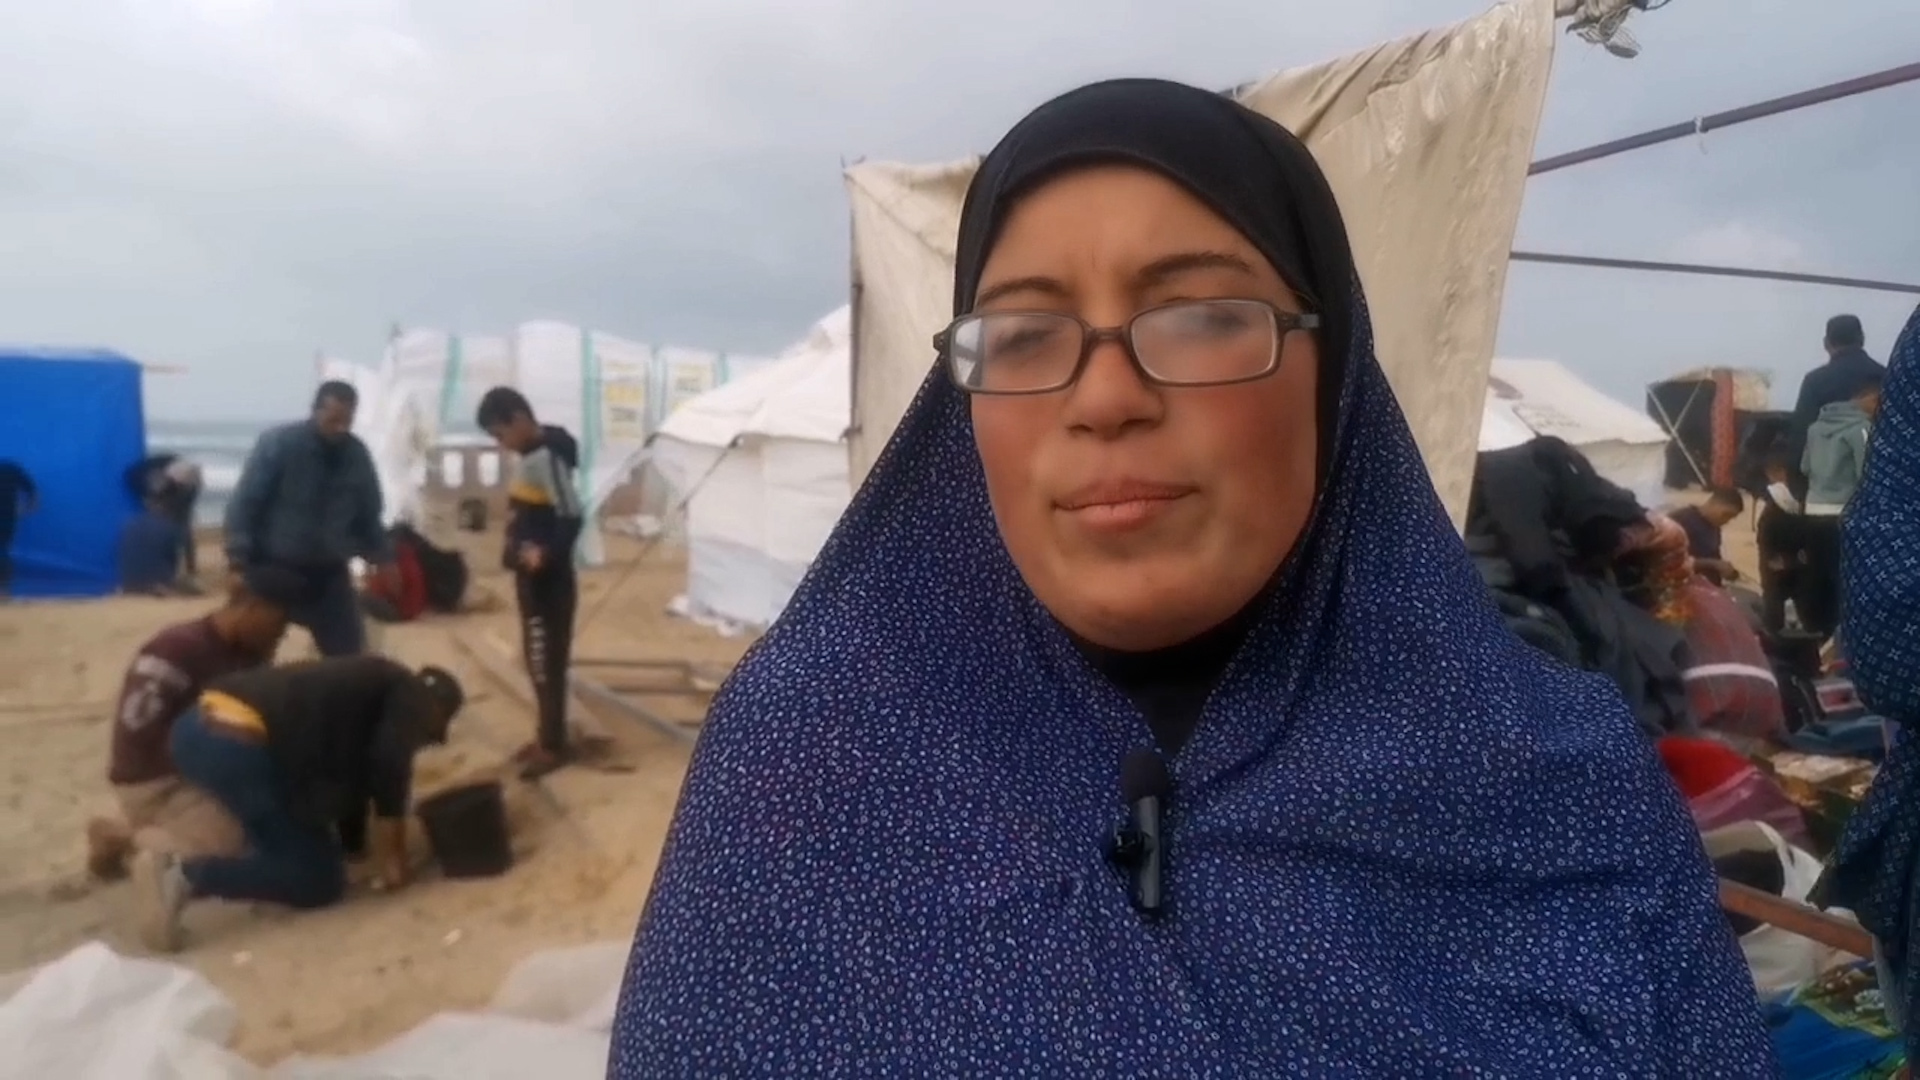 فيديو.. غزّيون يروون للجزيرة نت رحلة نزوحهم من خان يونس | سياسة – البوكس نيوز